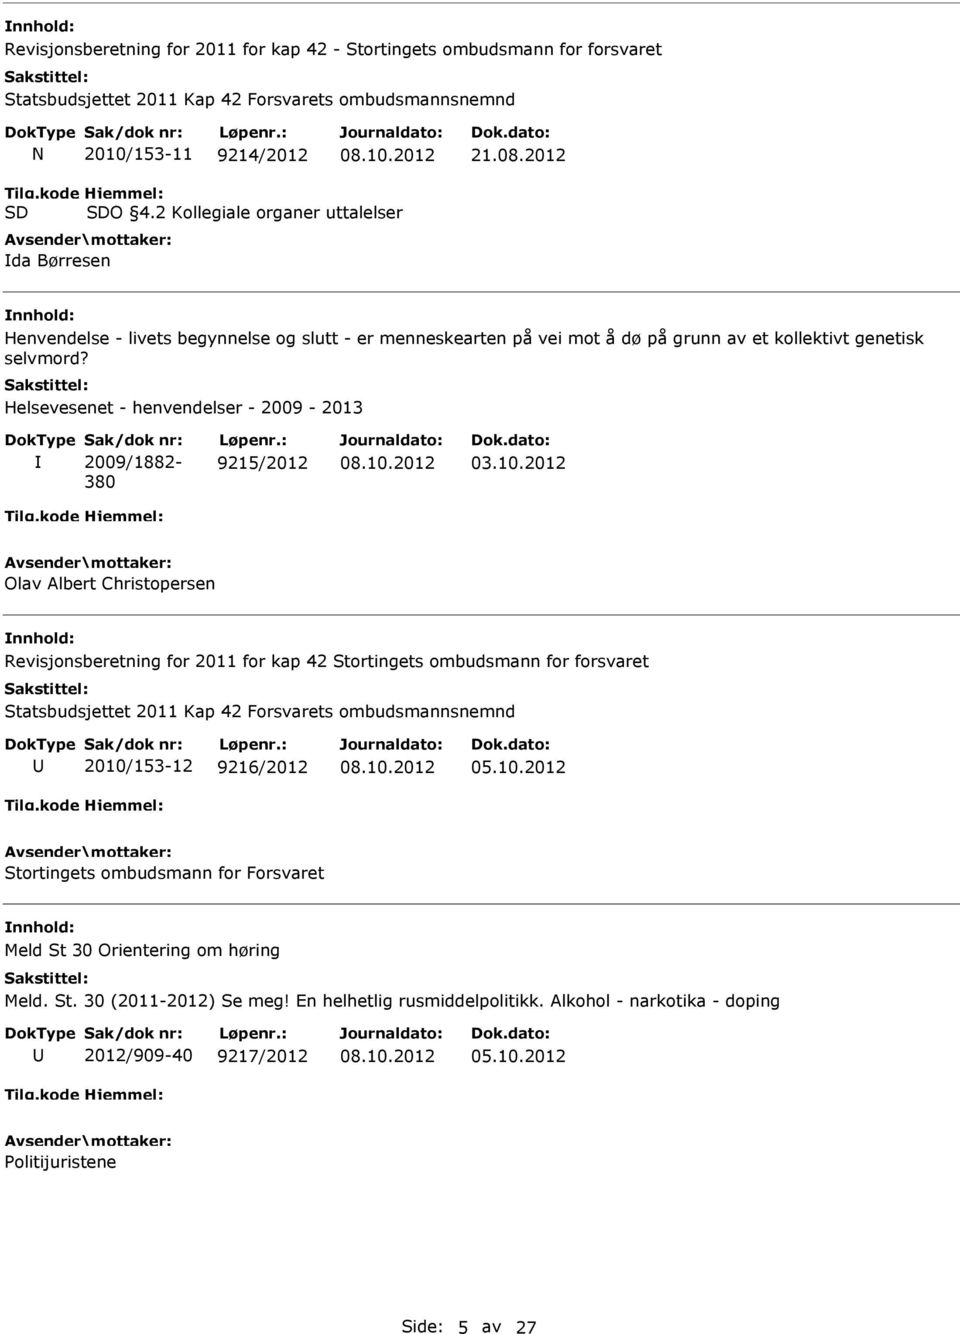 Helsevesenet - henvendelser - 2009-2013 Sak/dok nr: 2009/1882-380 Løpenr.: 9215/2012 03.10.